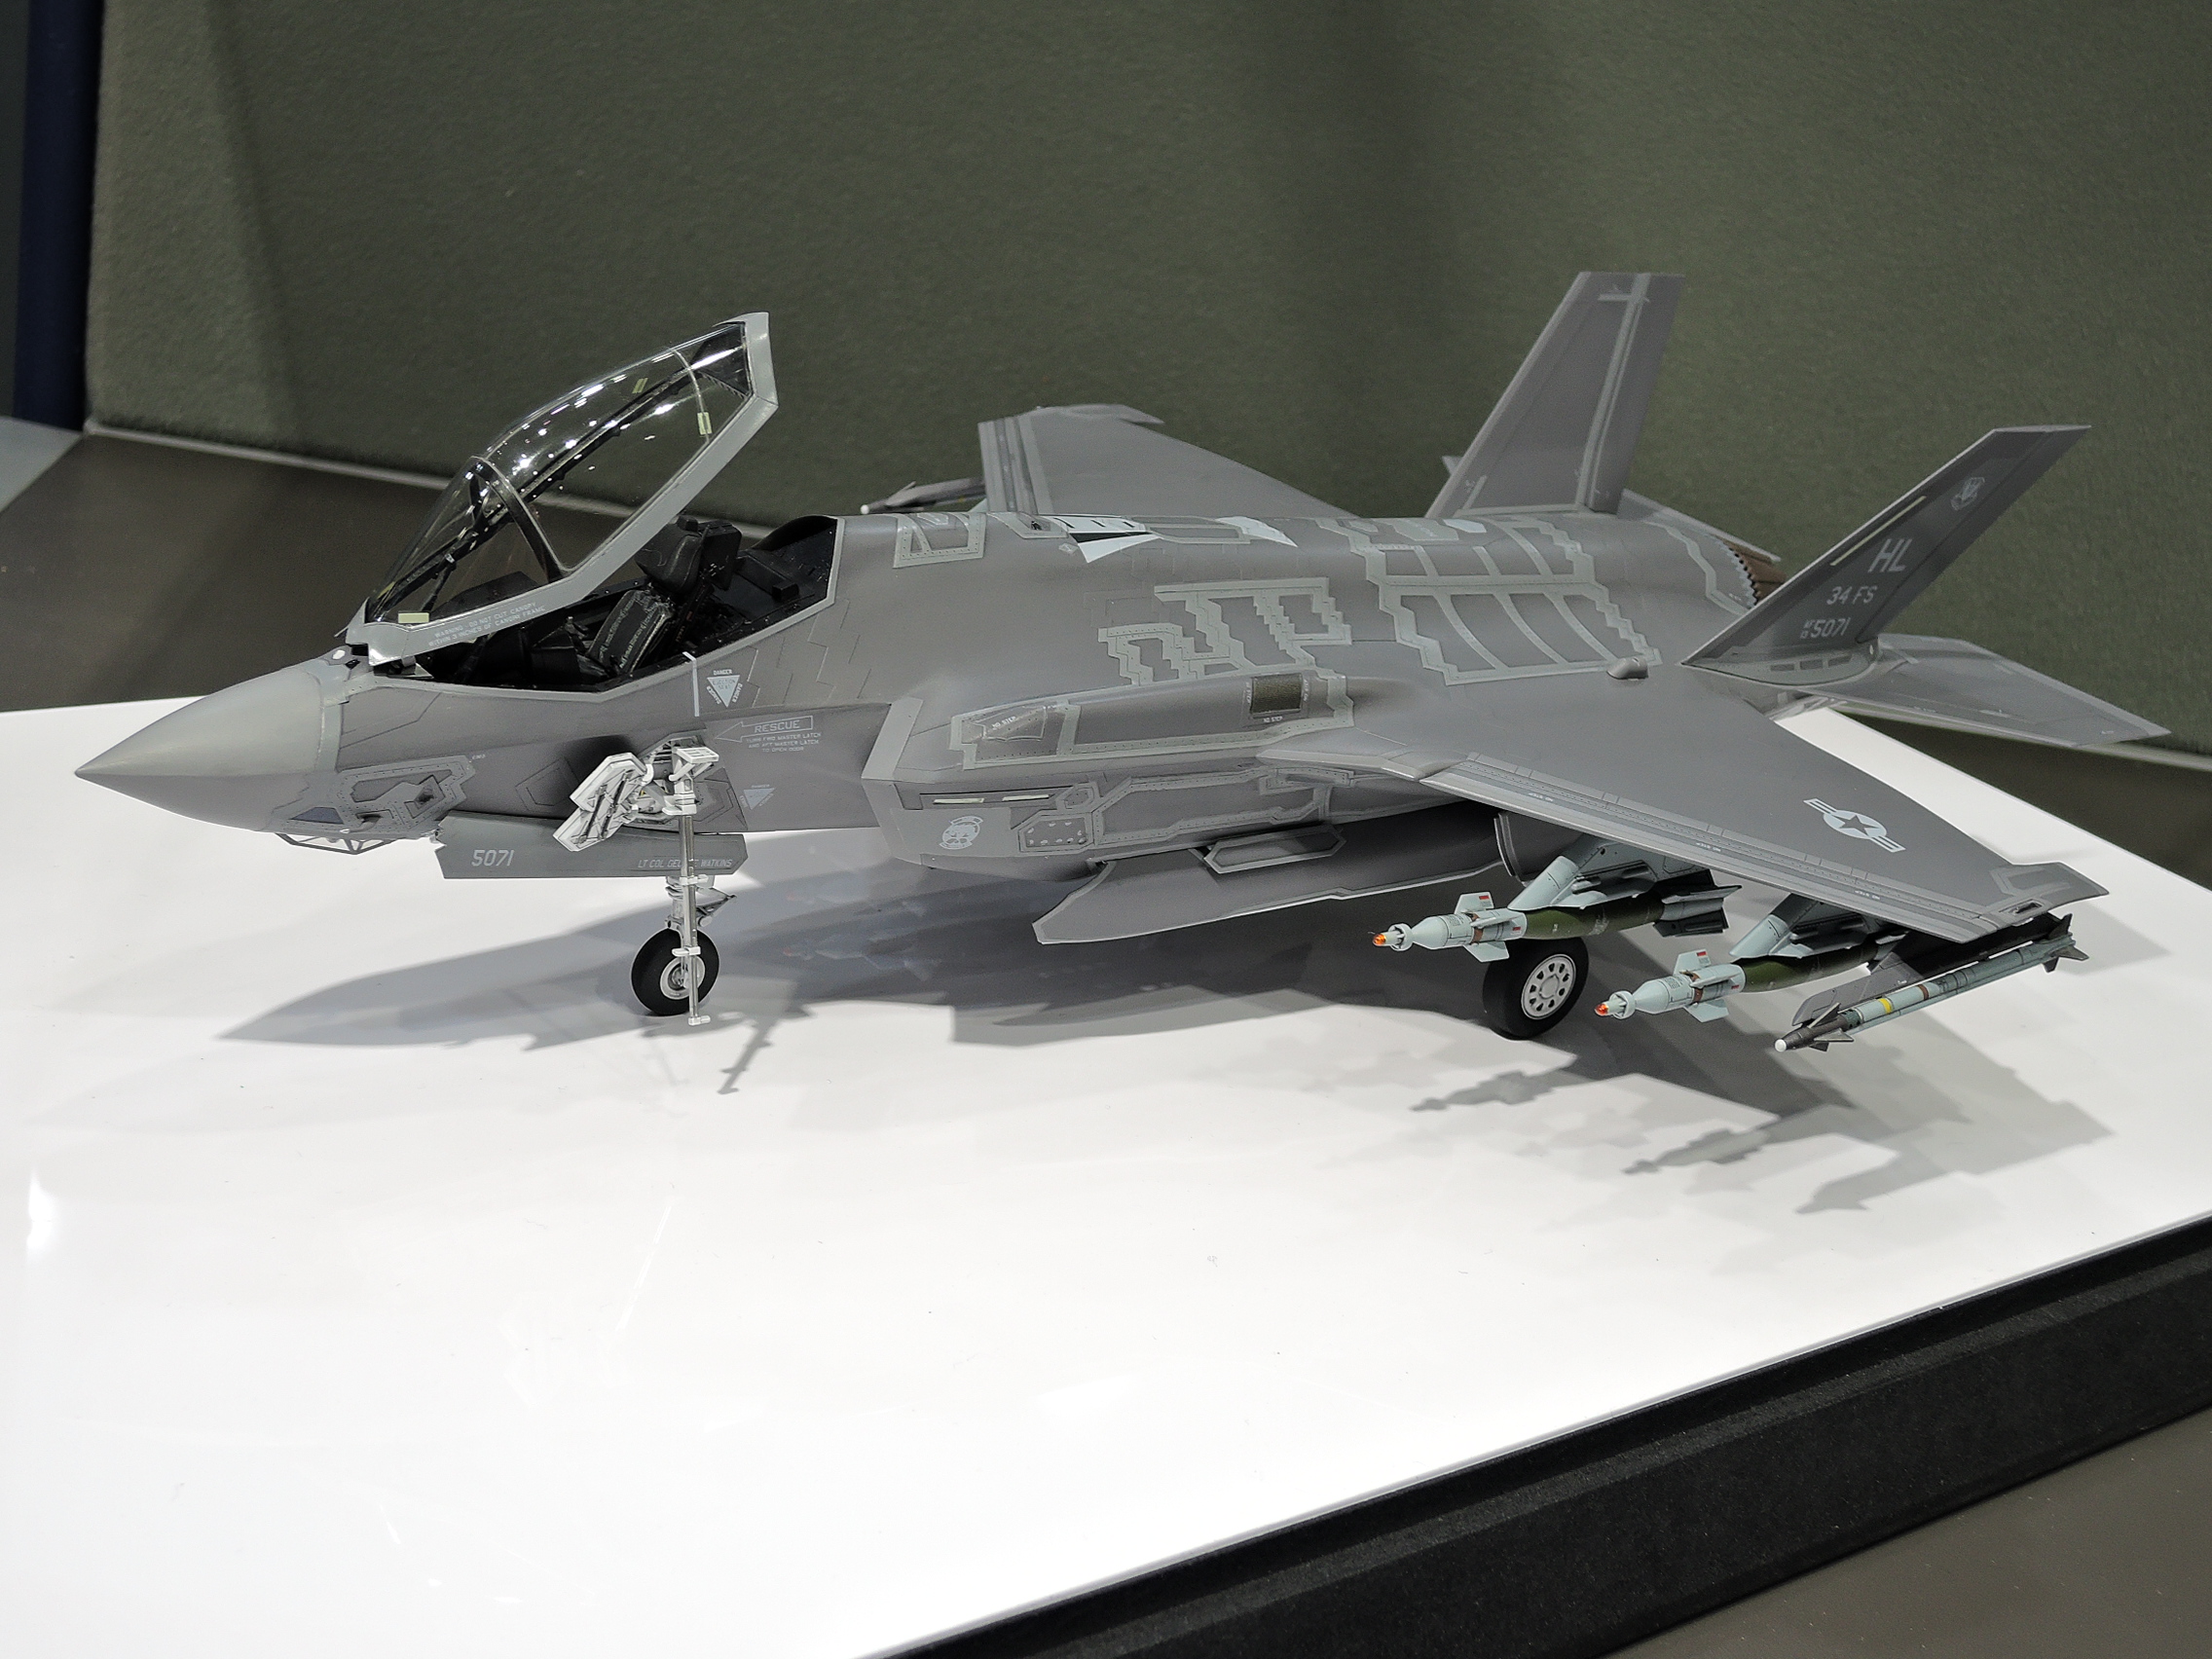 KJCLUB - 今、TAMIYA 1/48 F-35A ライトニングⅡ